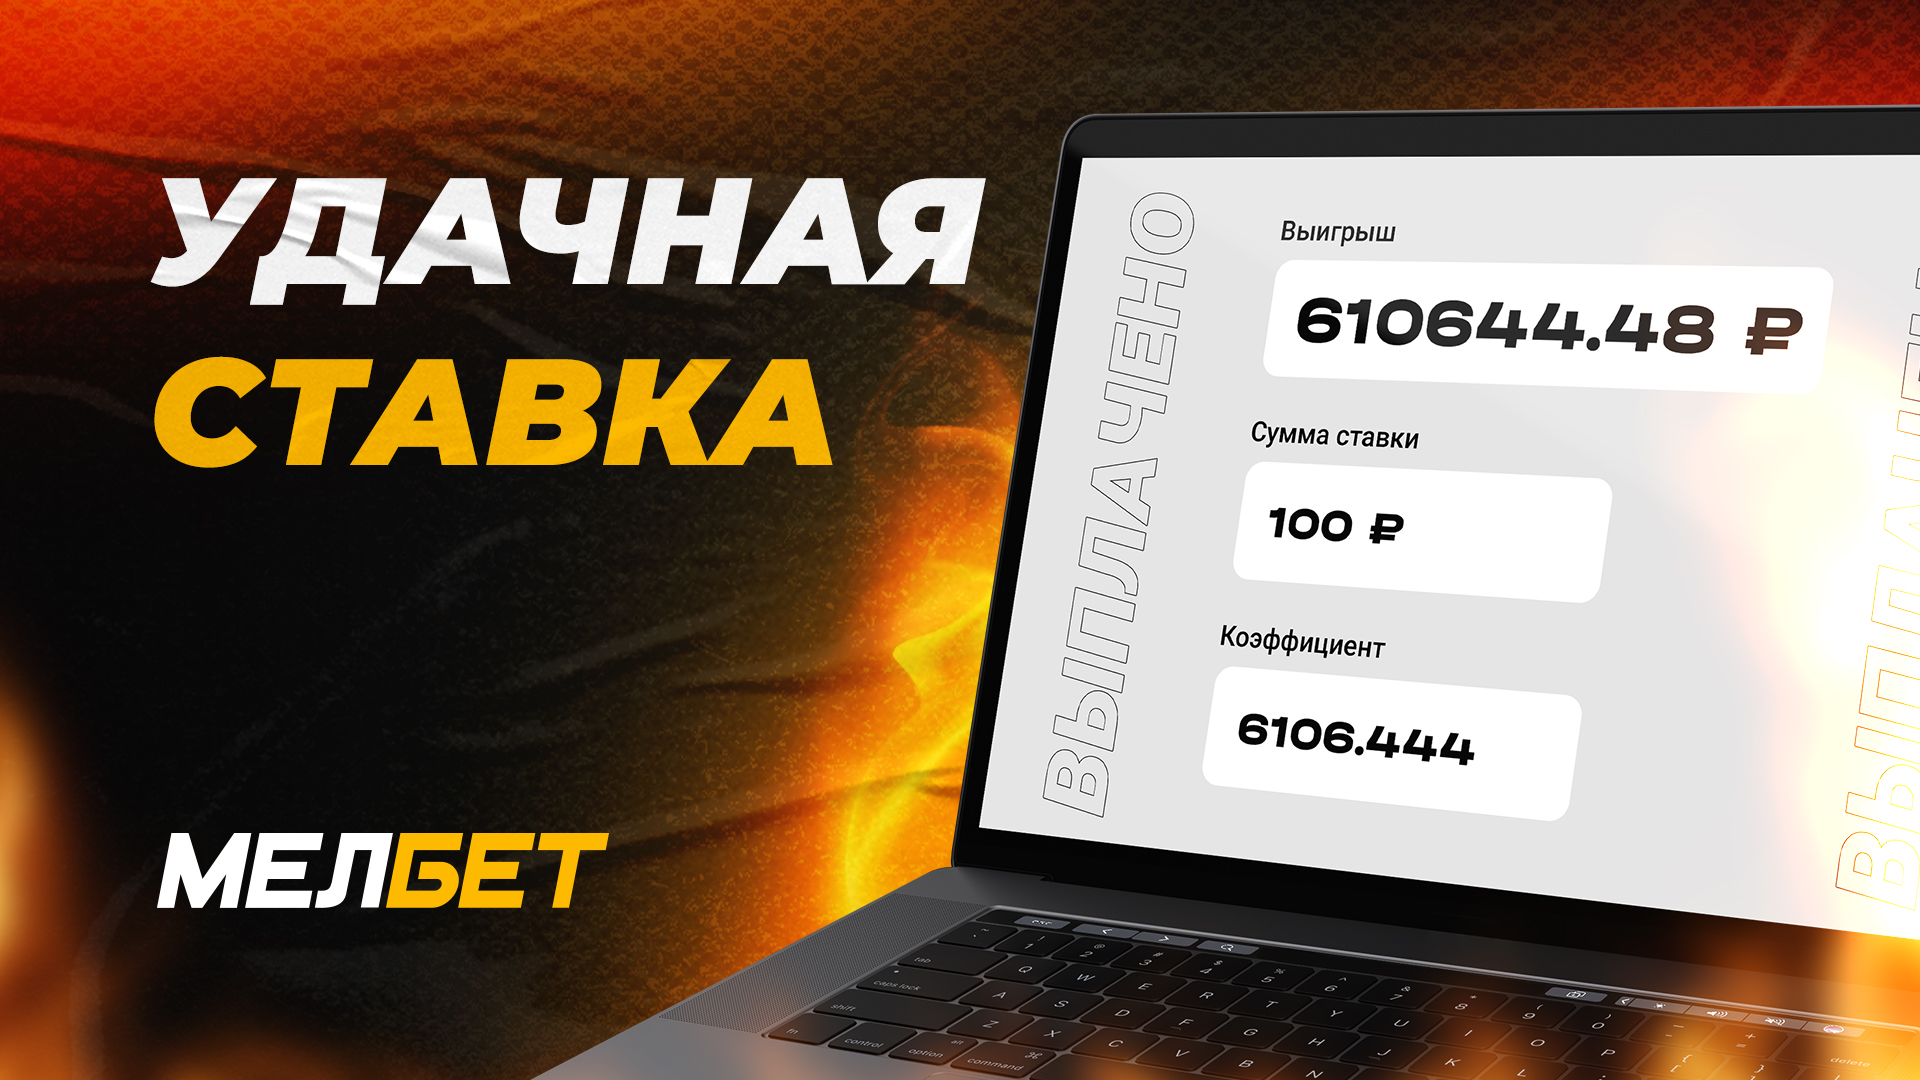 Игрок БК "Мелбет" собрал фантастический экспресс и забрал более 610 000 рублей с одной ставки